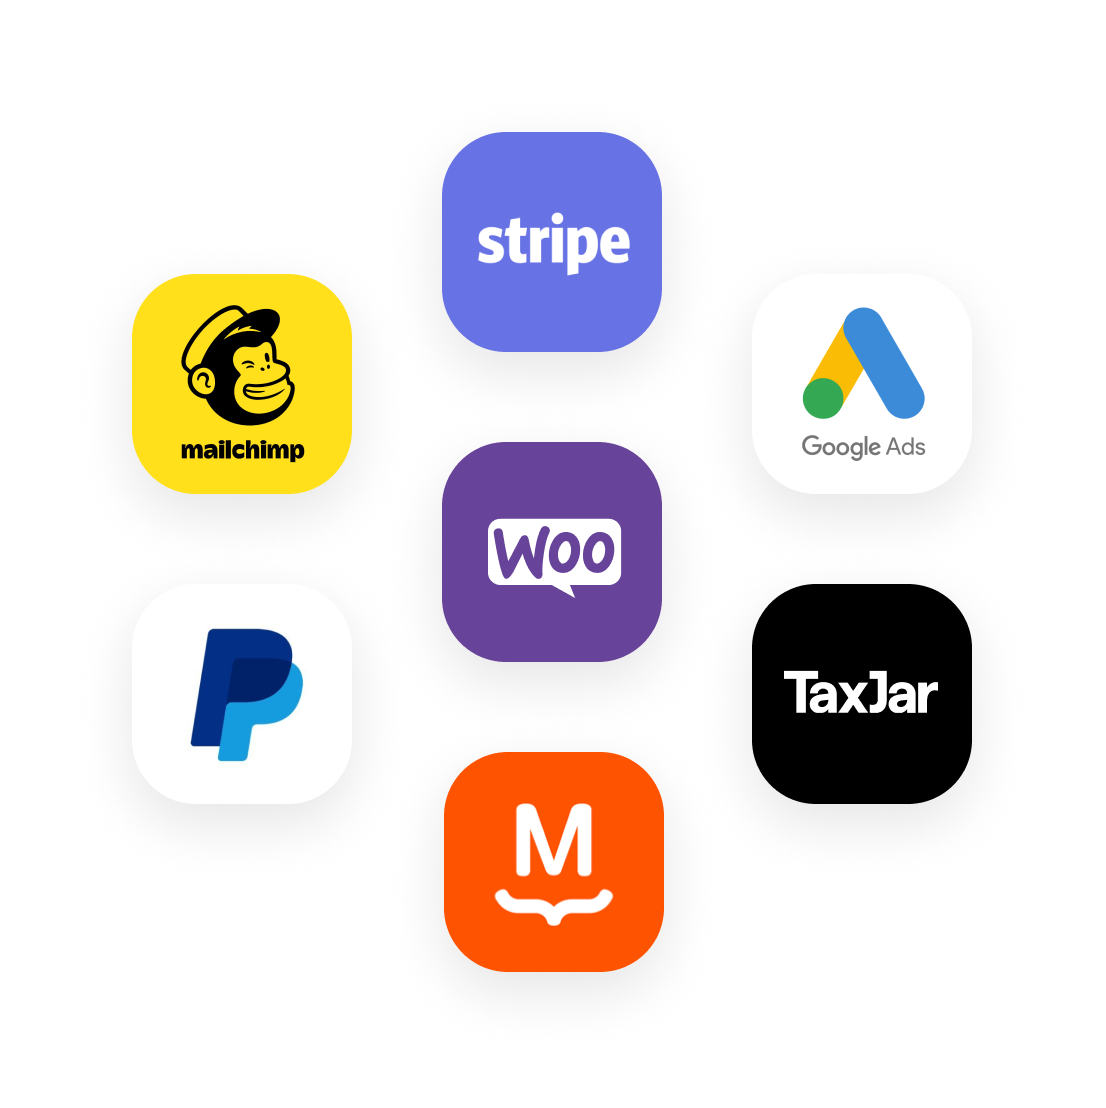 Logos pour une sélection de produits compatibles avec WooCommerce : Stripe, Google Ads, TaxJar, MailChimp, PayPal et MailPoet.